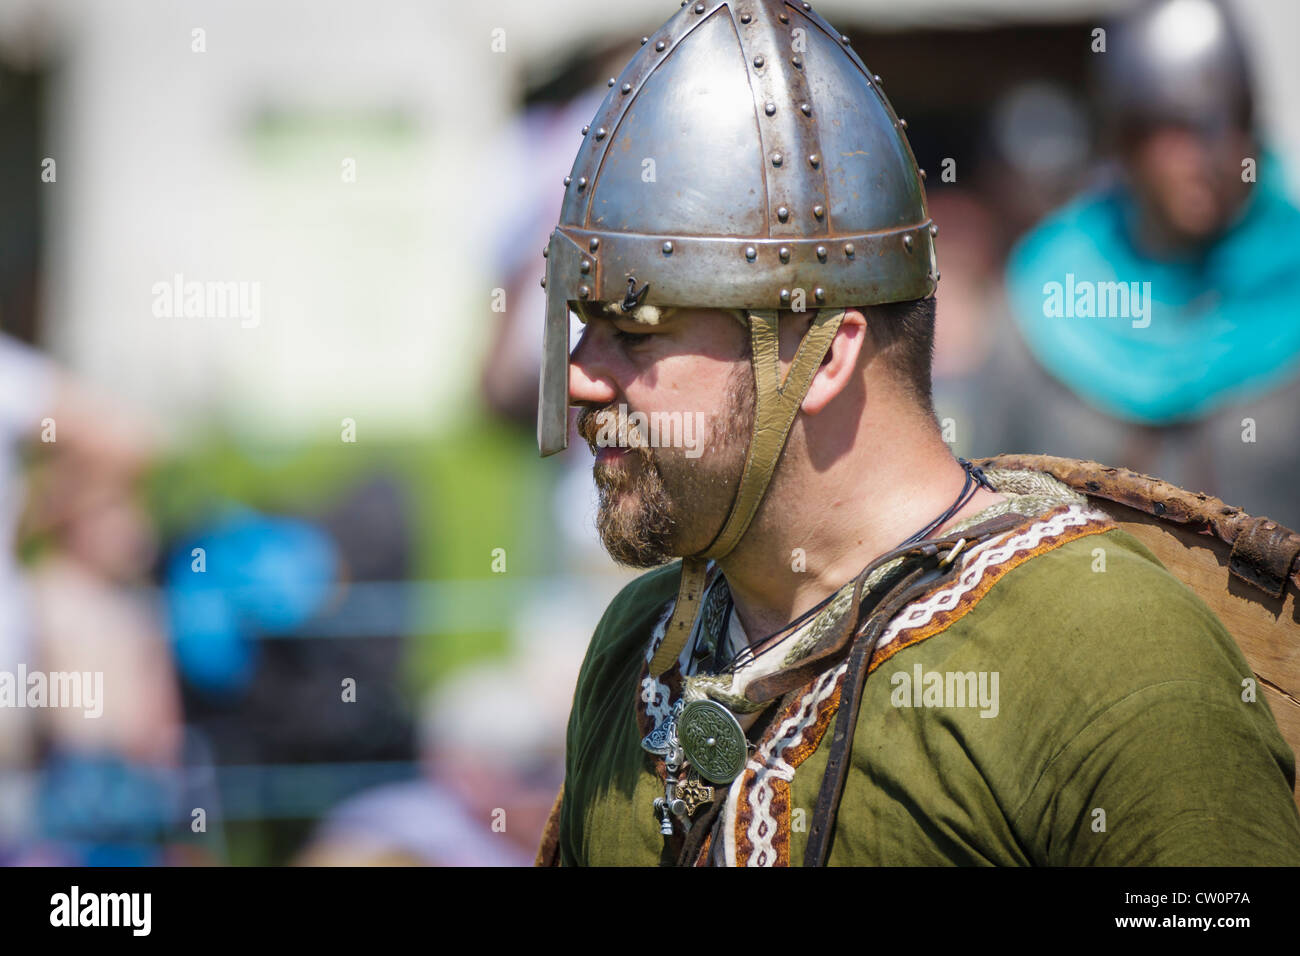 Mann in mittelalterlichen Kostümen Replik während Viking / angelsächsischen Reenactment. St Albans, UK. Mai 2012 Stockfoto